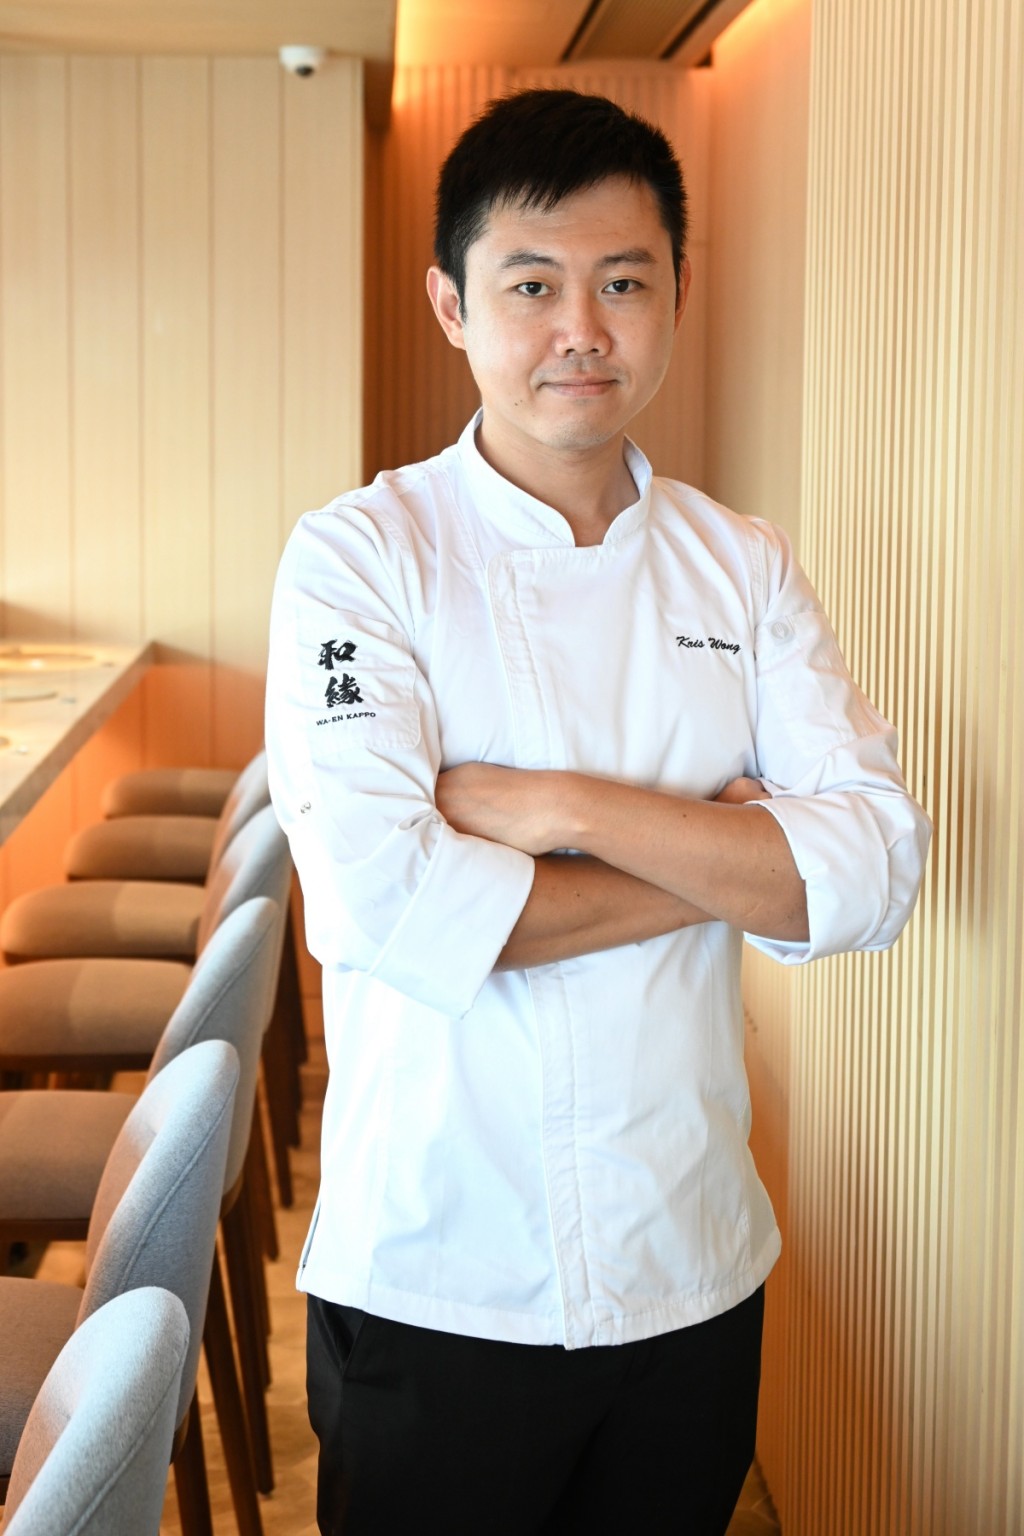 負責掌舵的主廚Kris有逾二十年鑽研及烹製日本菜經驗，不但精通日文，並曾在多間星級食府工作